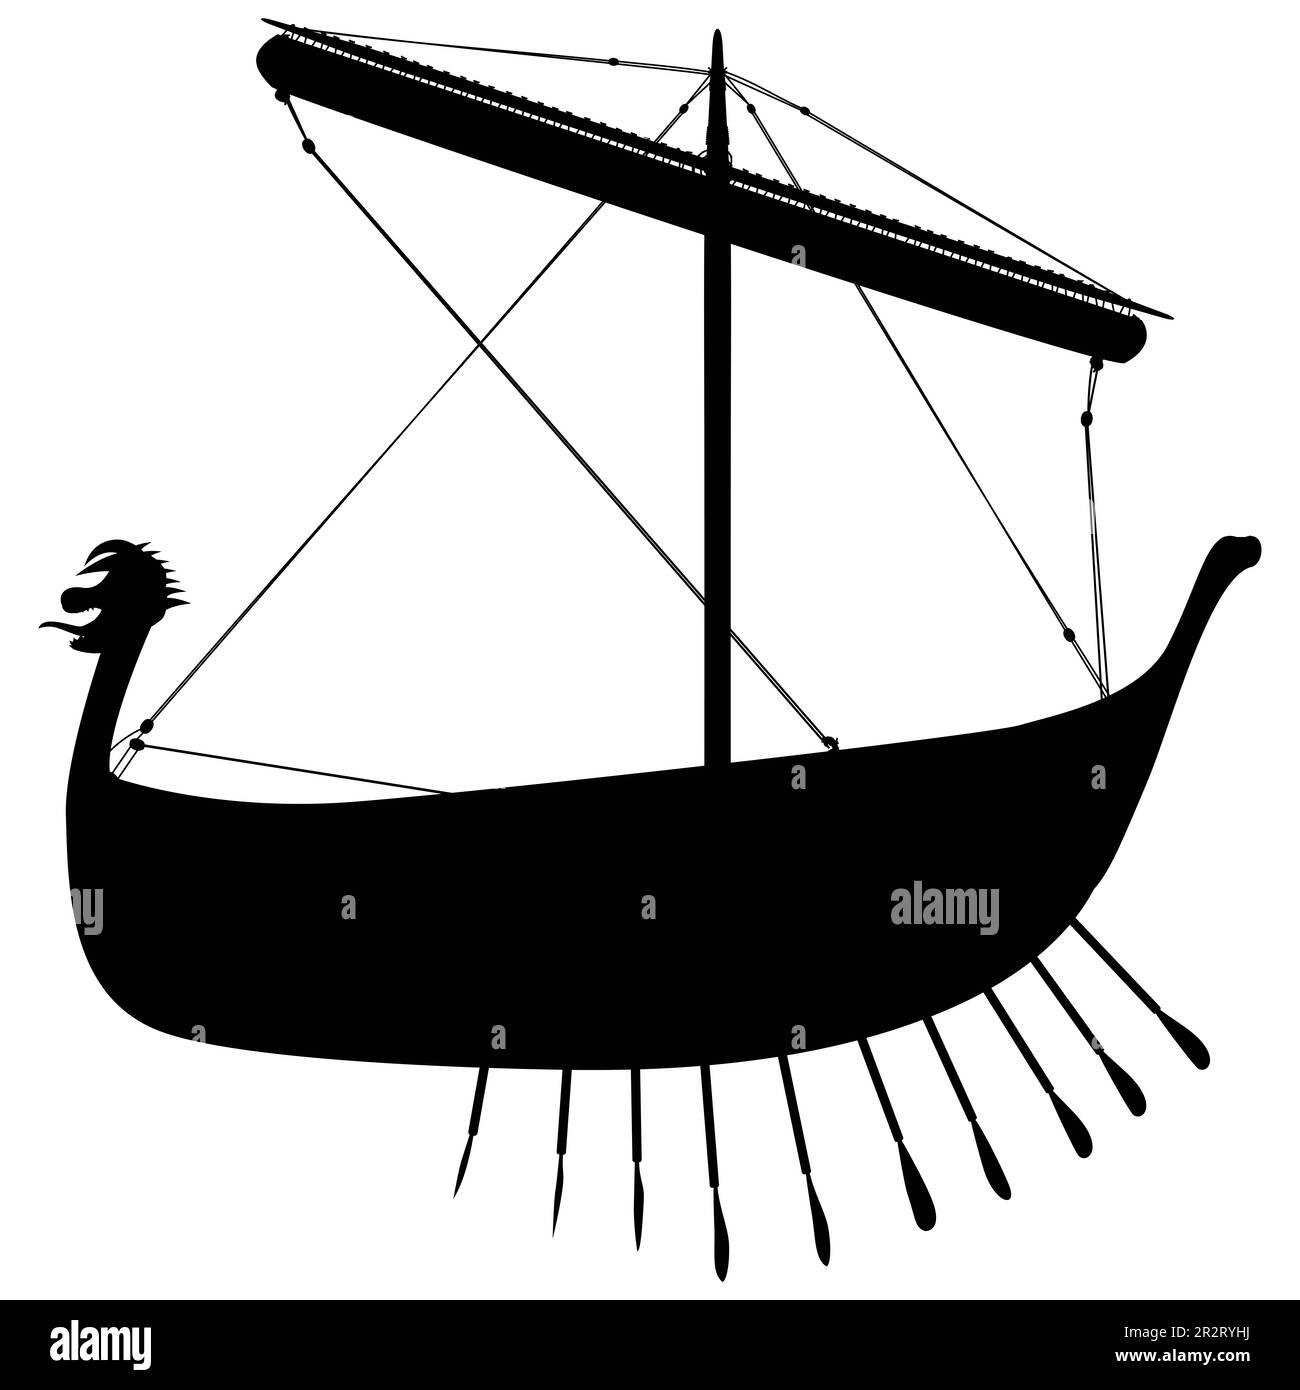 Silhouette drakkar scandinave viking. Navire à ramer normand. Illustration isolée sur fond blanc. Banque D'Images